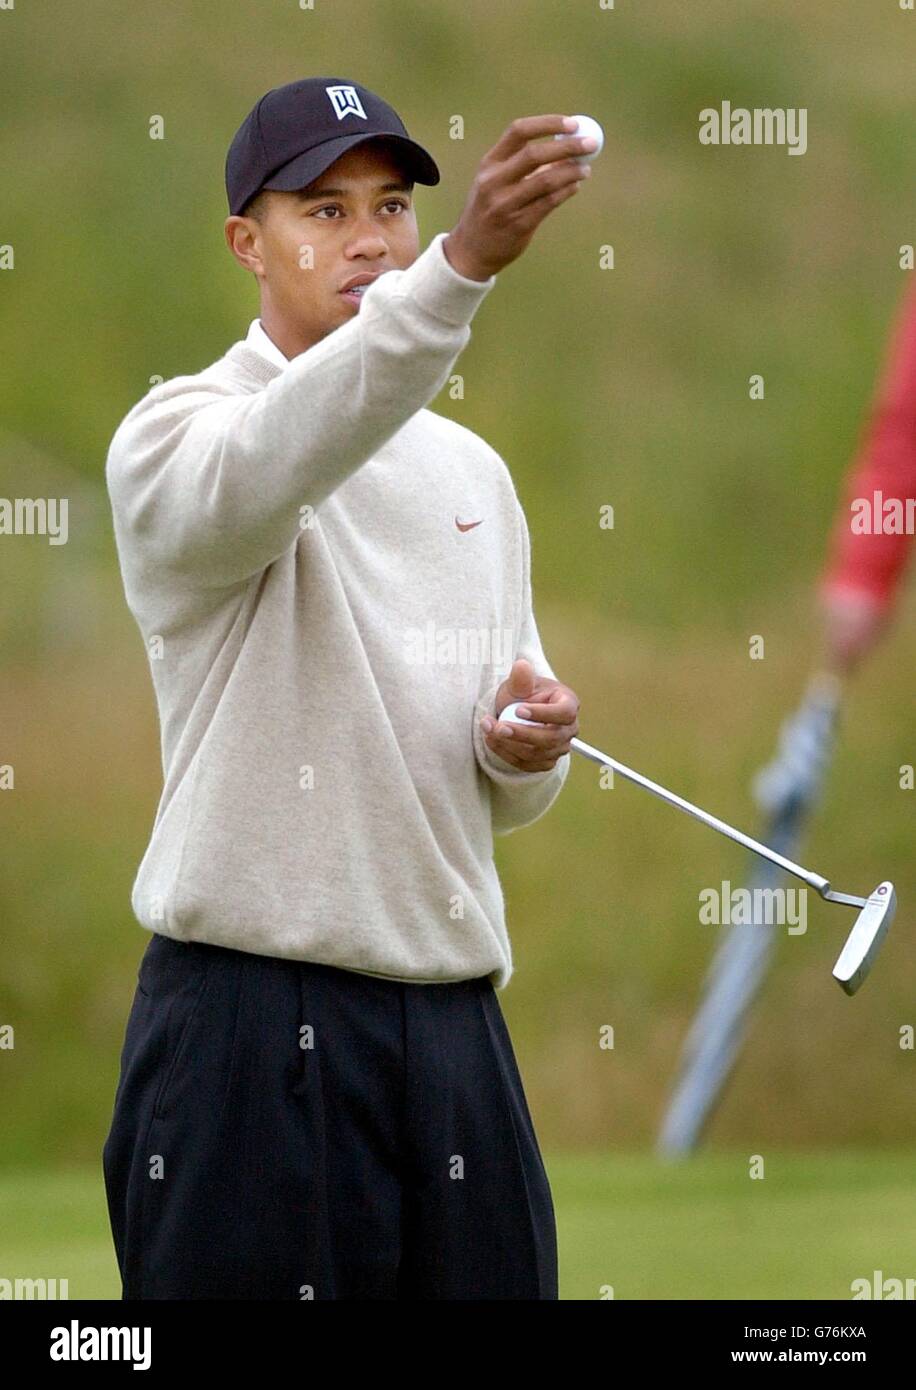 Tiger Woods inspecte son ballon lors de la deuxième journée d'entraînement pour le championnat de golf ouvert à Muirfield en Écosse. Banque D'Images